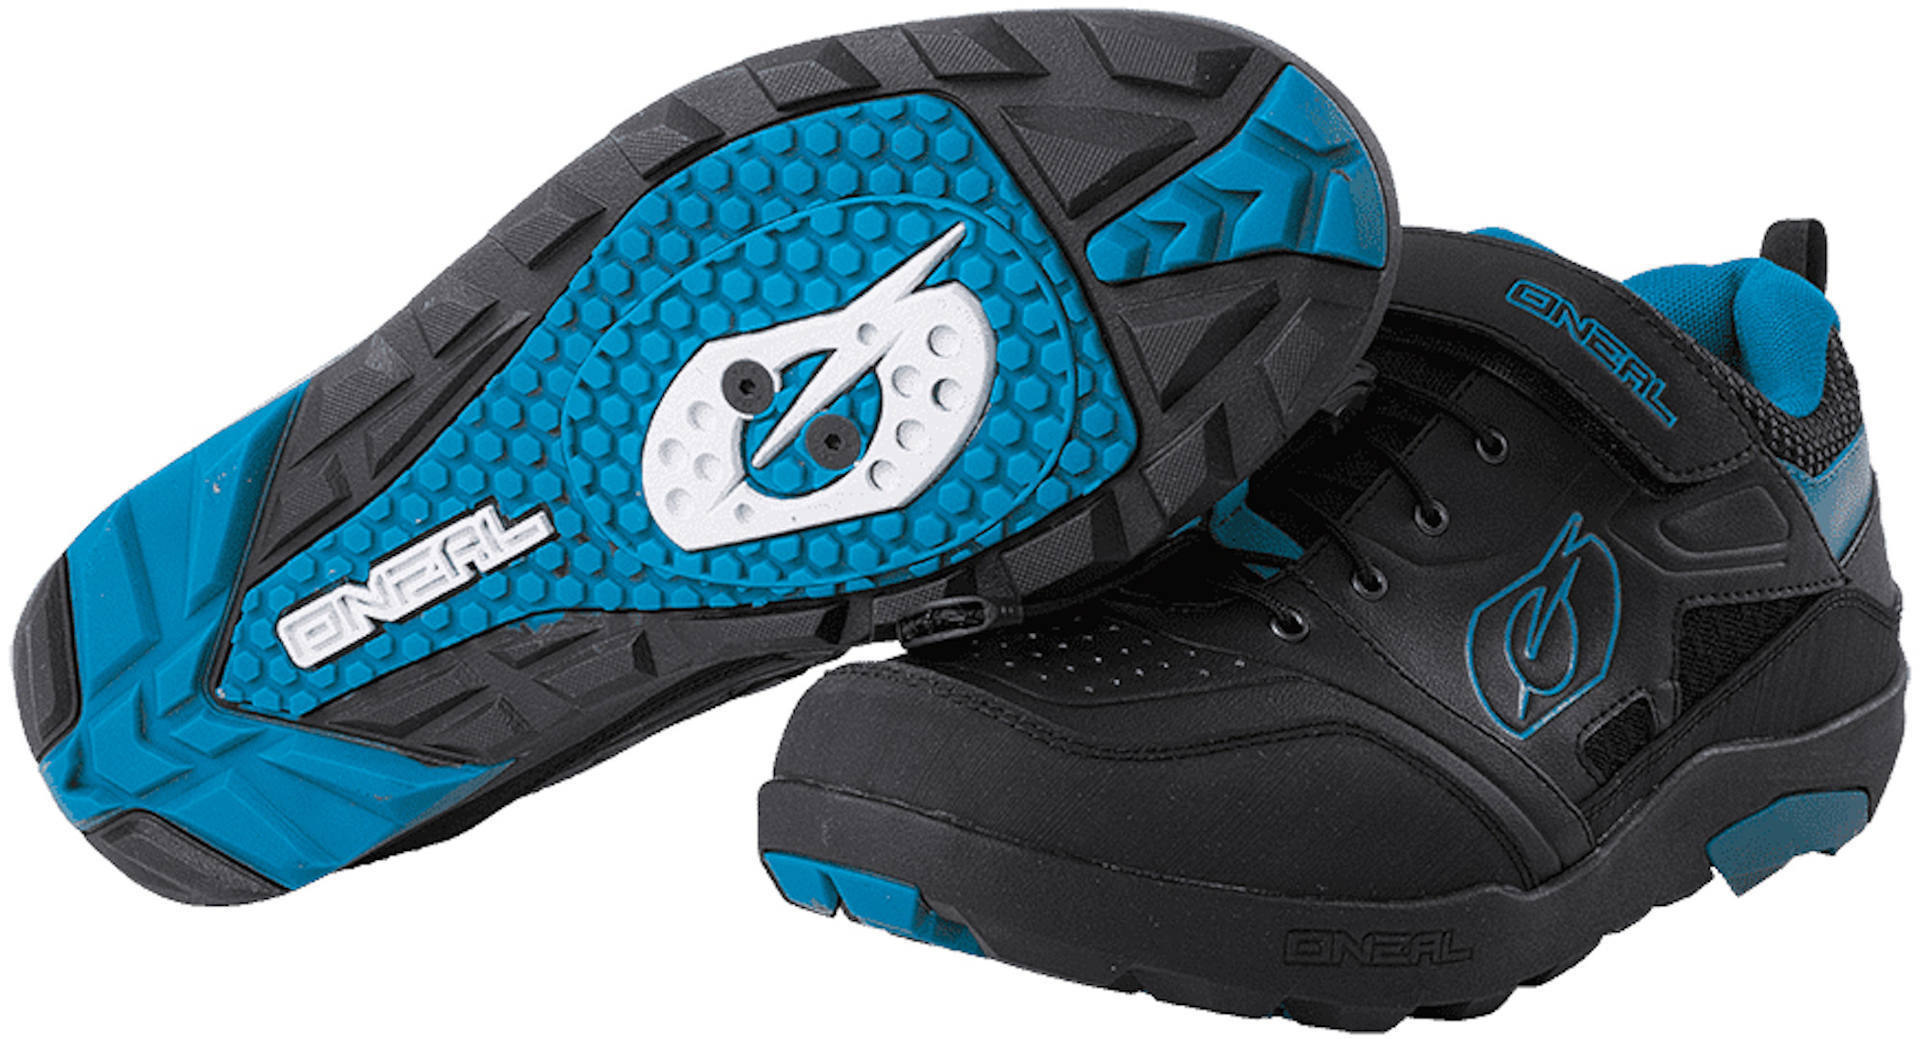 Oneal Traverse SPD Schuhe, schwarz-blau, Größe 41, schwarz-blau, Größe 41